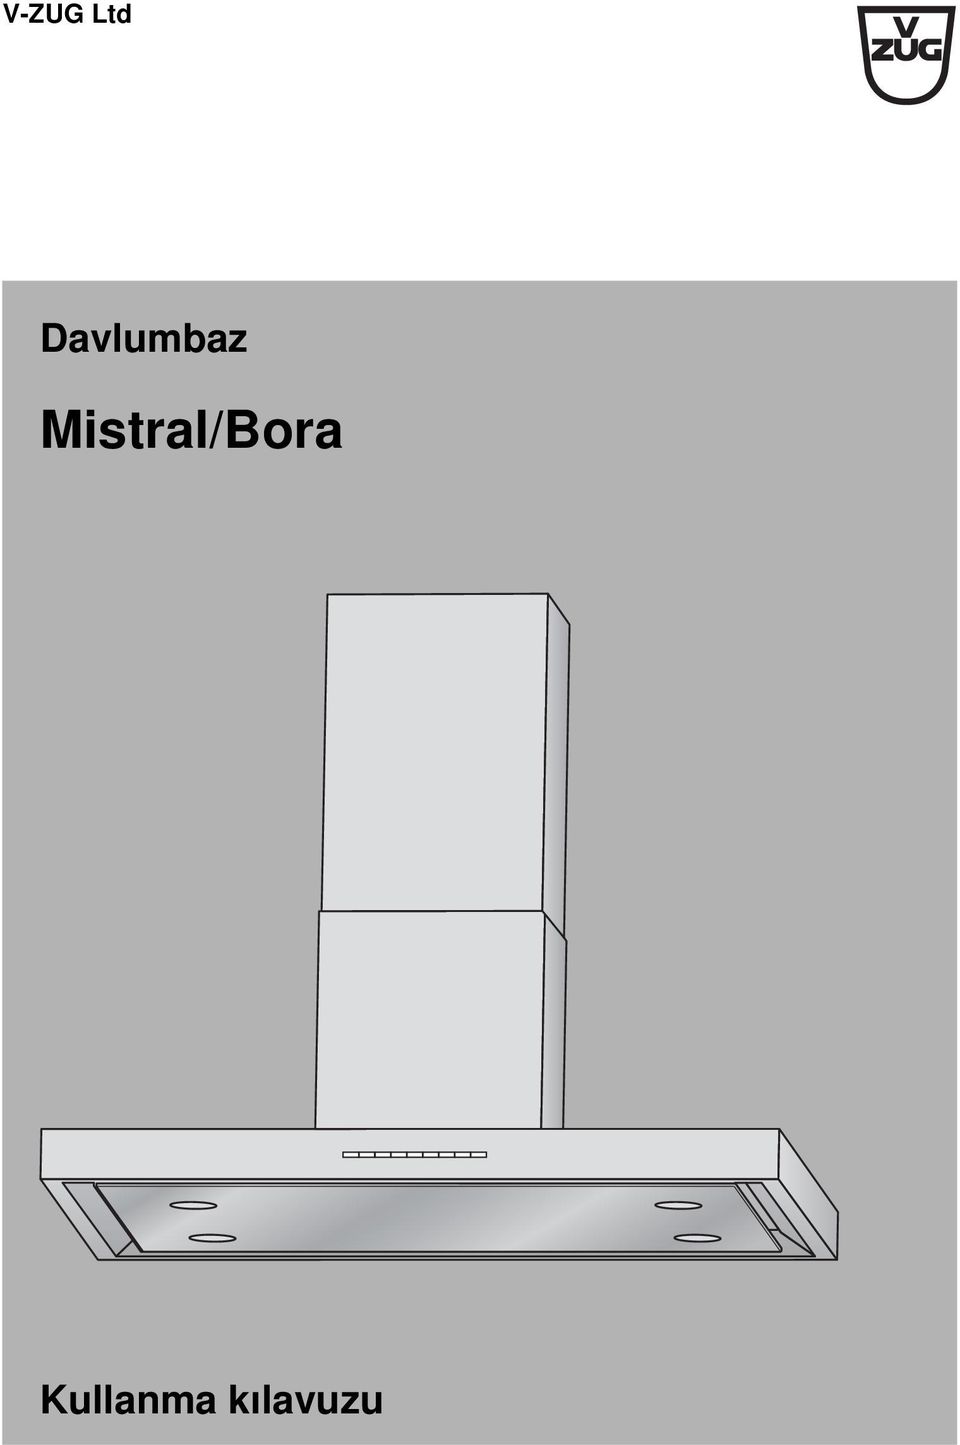 Mistral/Bora